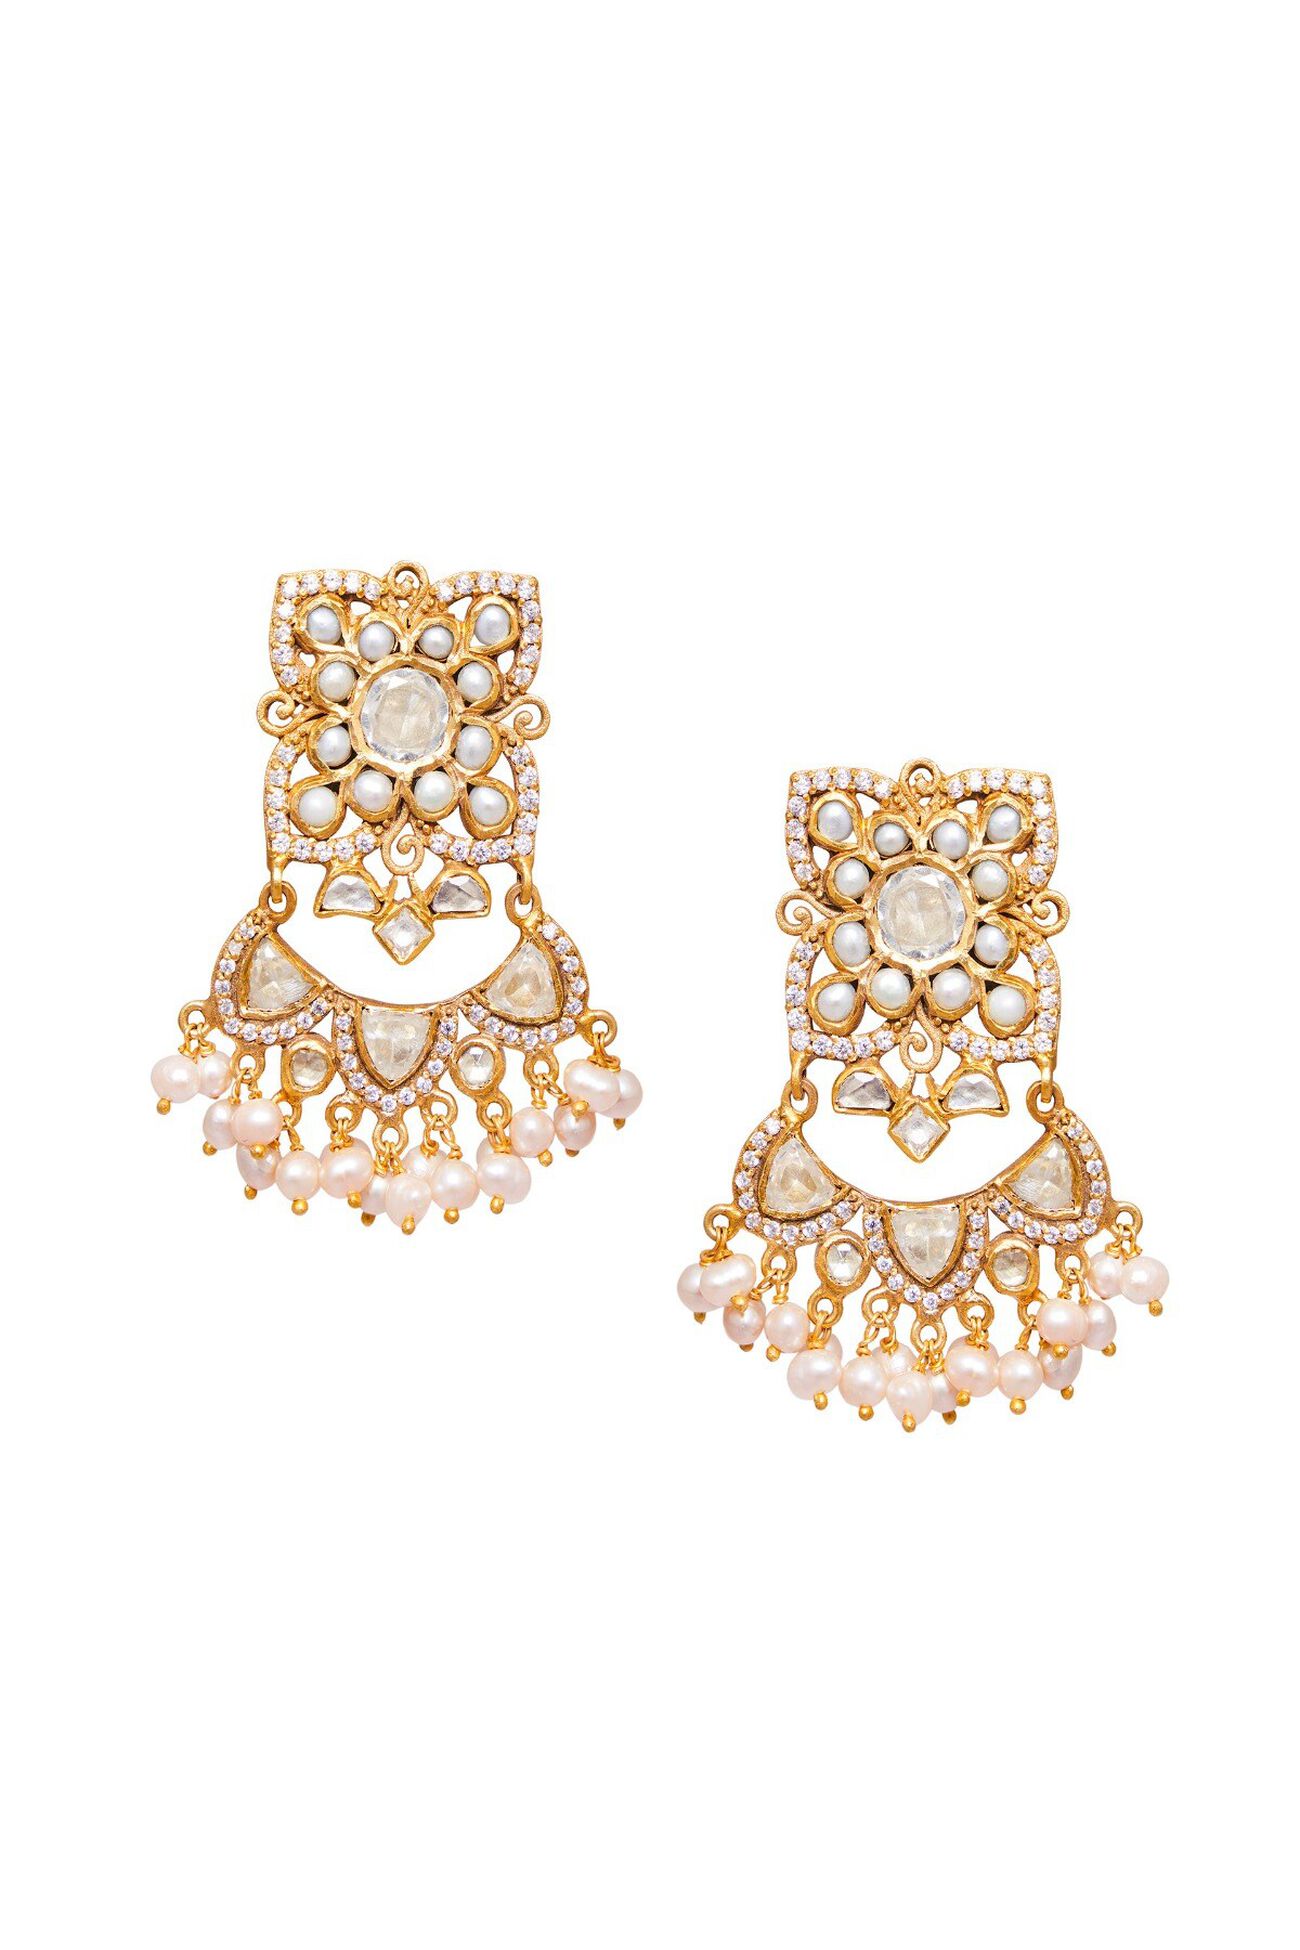 1 - Aranka Earrings, image 1